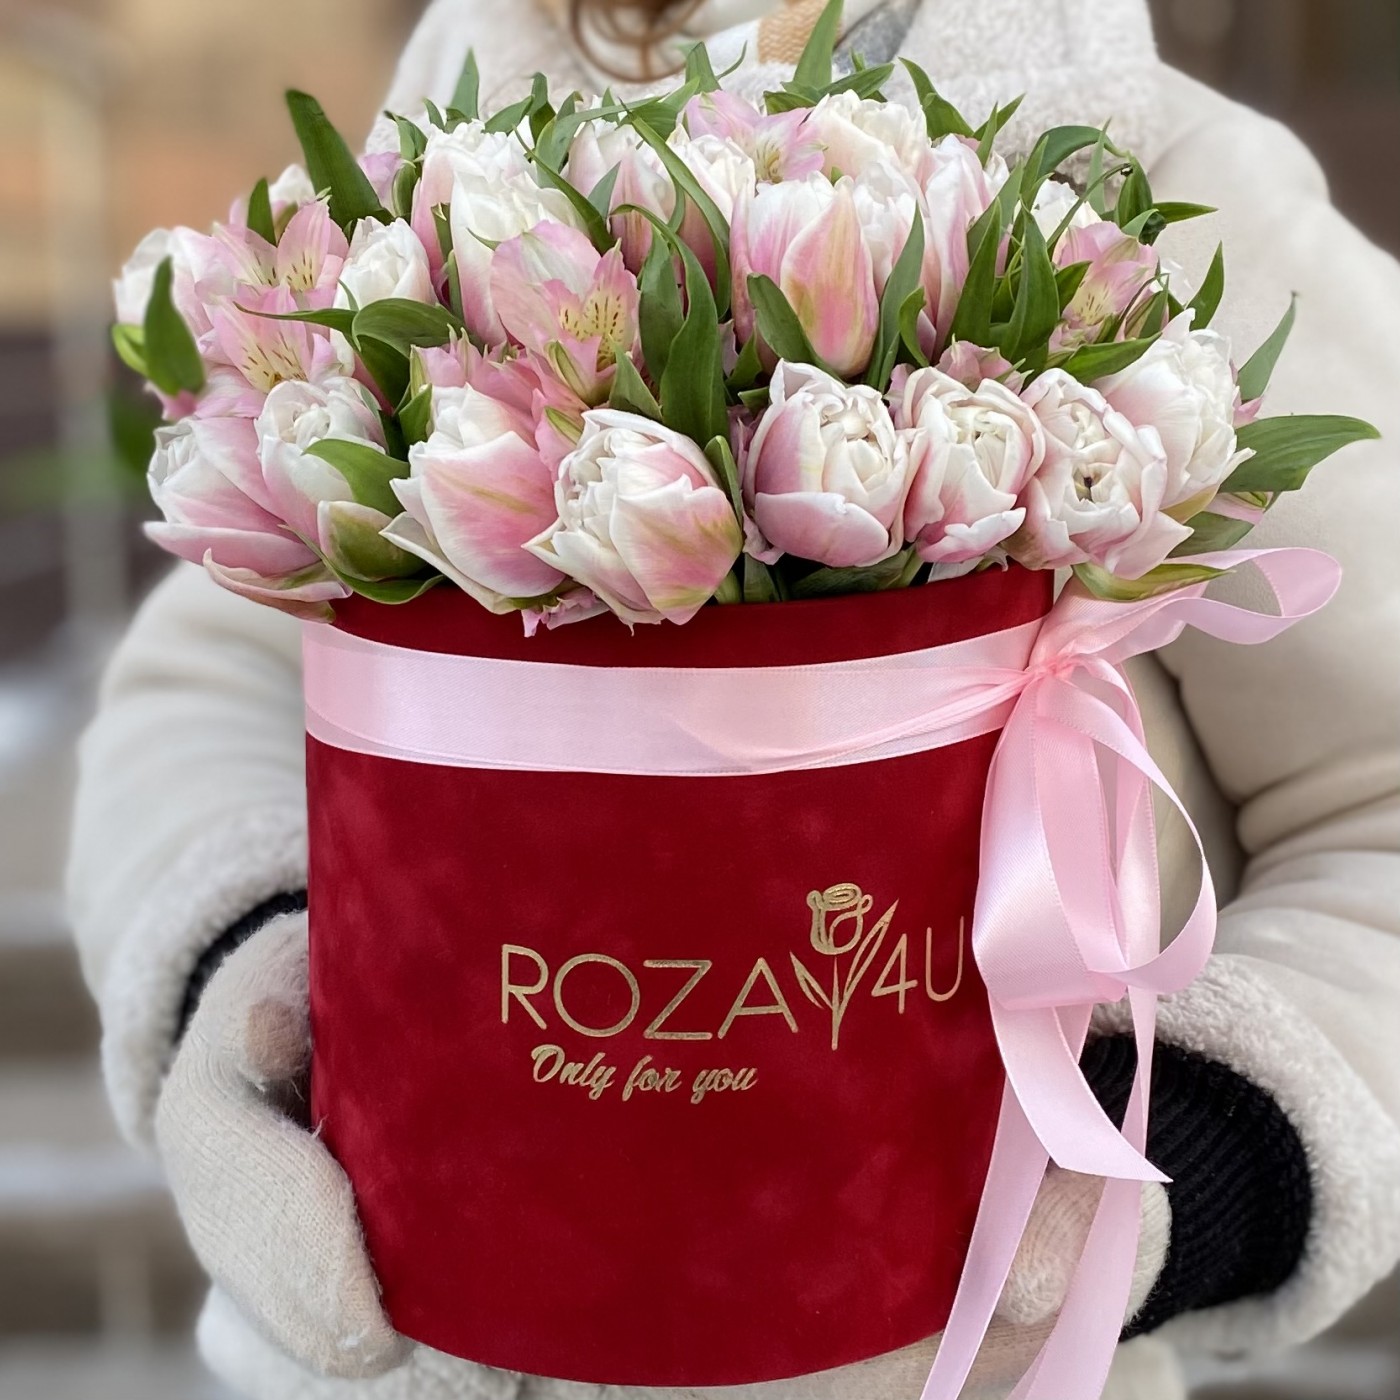 31 бело-розовый пионовидный тюльпан с альстромерией в коробке